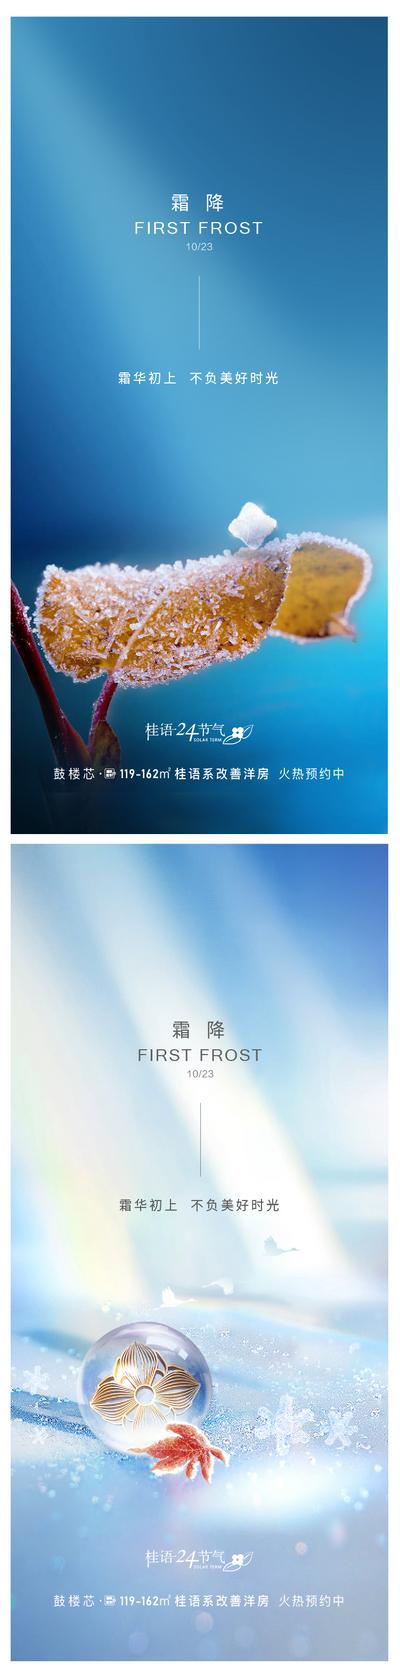 南门网 广告 海报 节气 霜降 立冬 寒冷 雪花 系列 简约